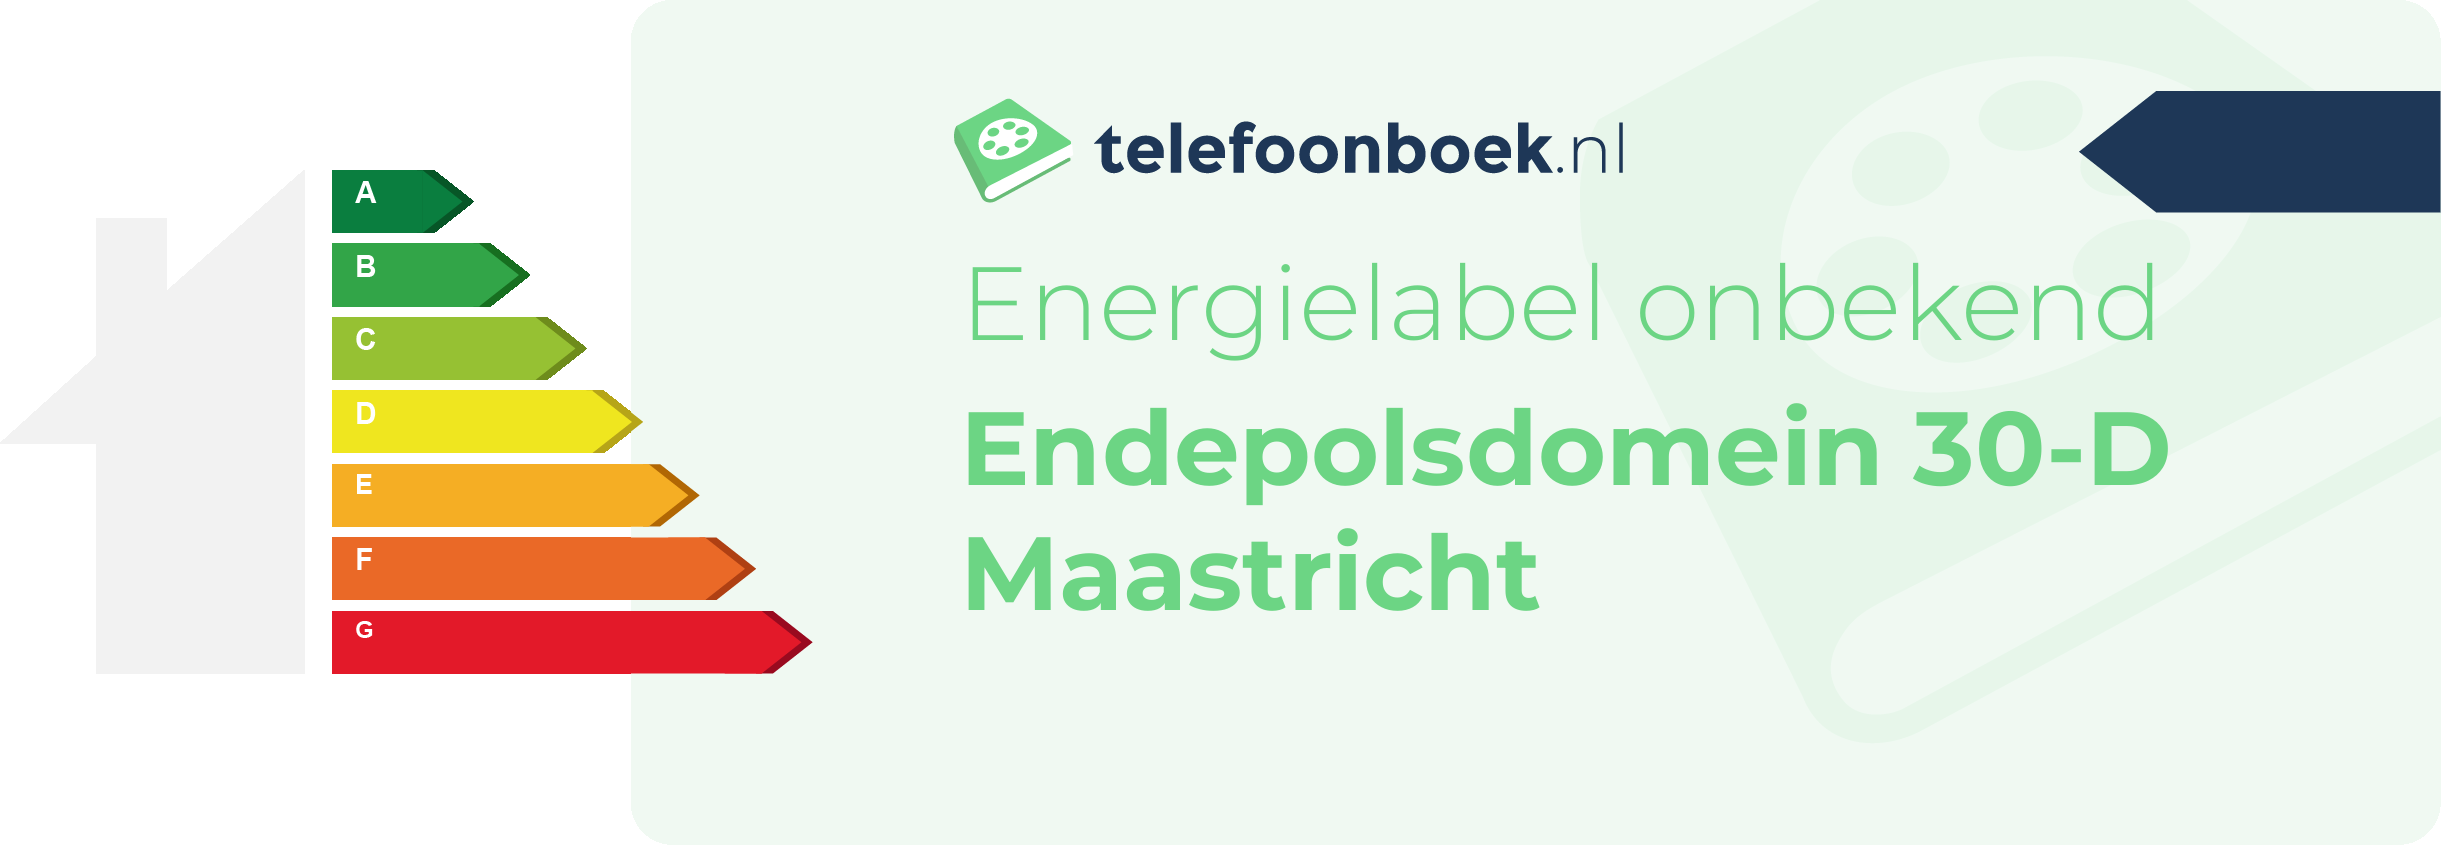 Energielabel Endepolsdomein 30-D Maastricht